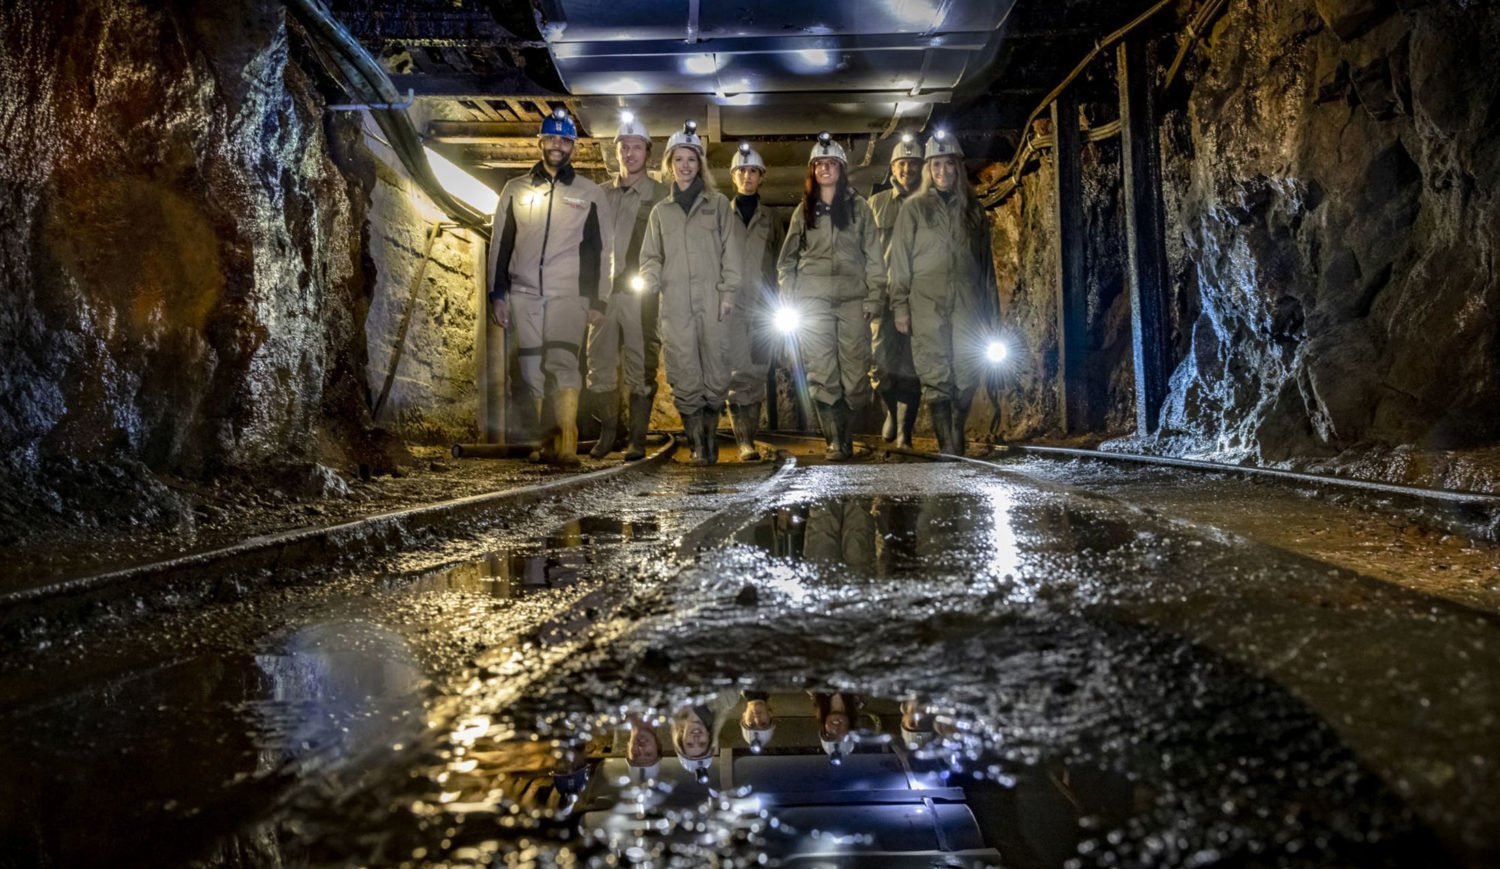 800 Jahre Bergbau hautnah erleben – das Silberbergwerk Freiberg lädt zum Besuch ein